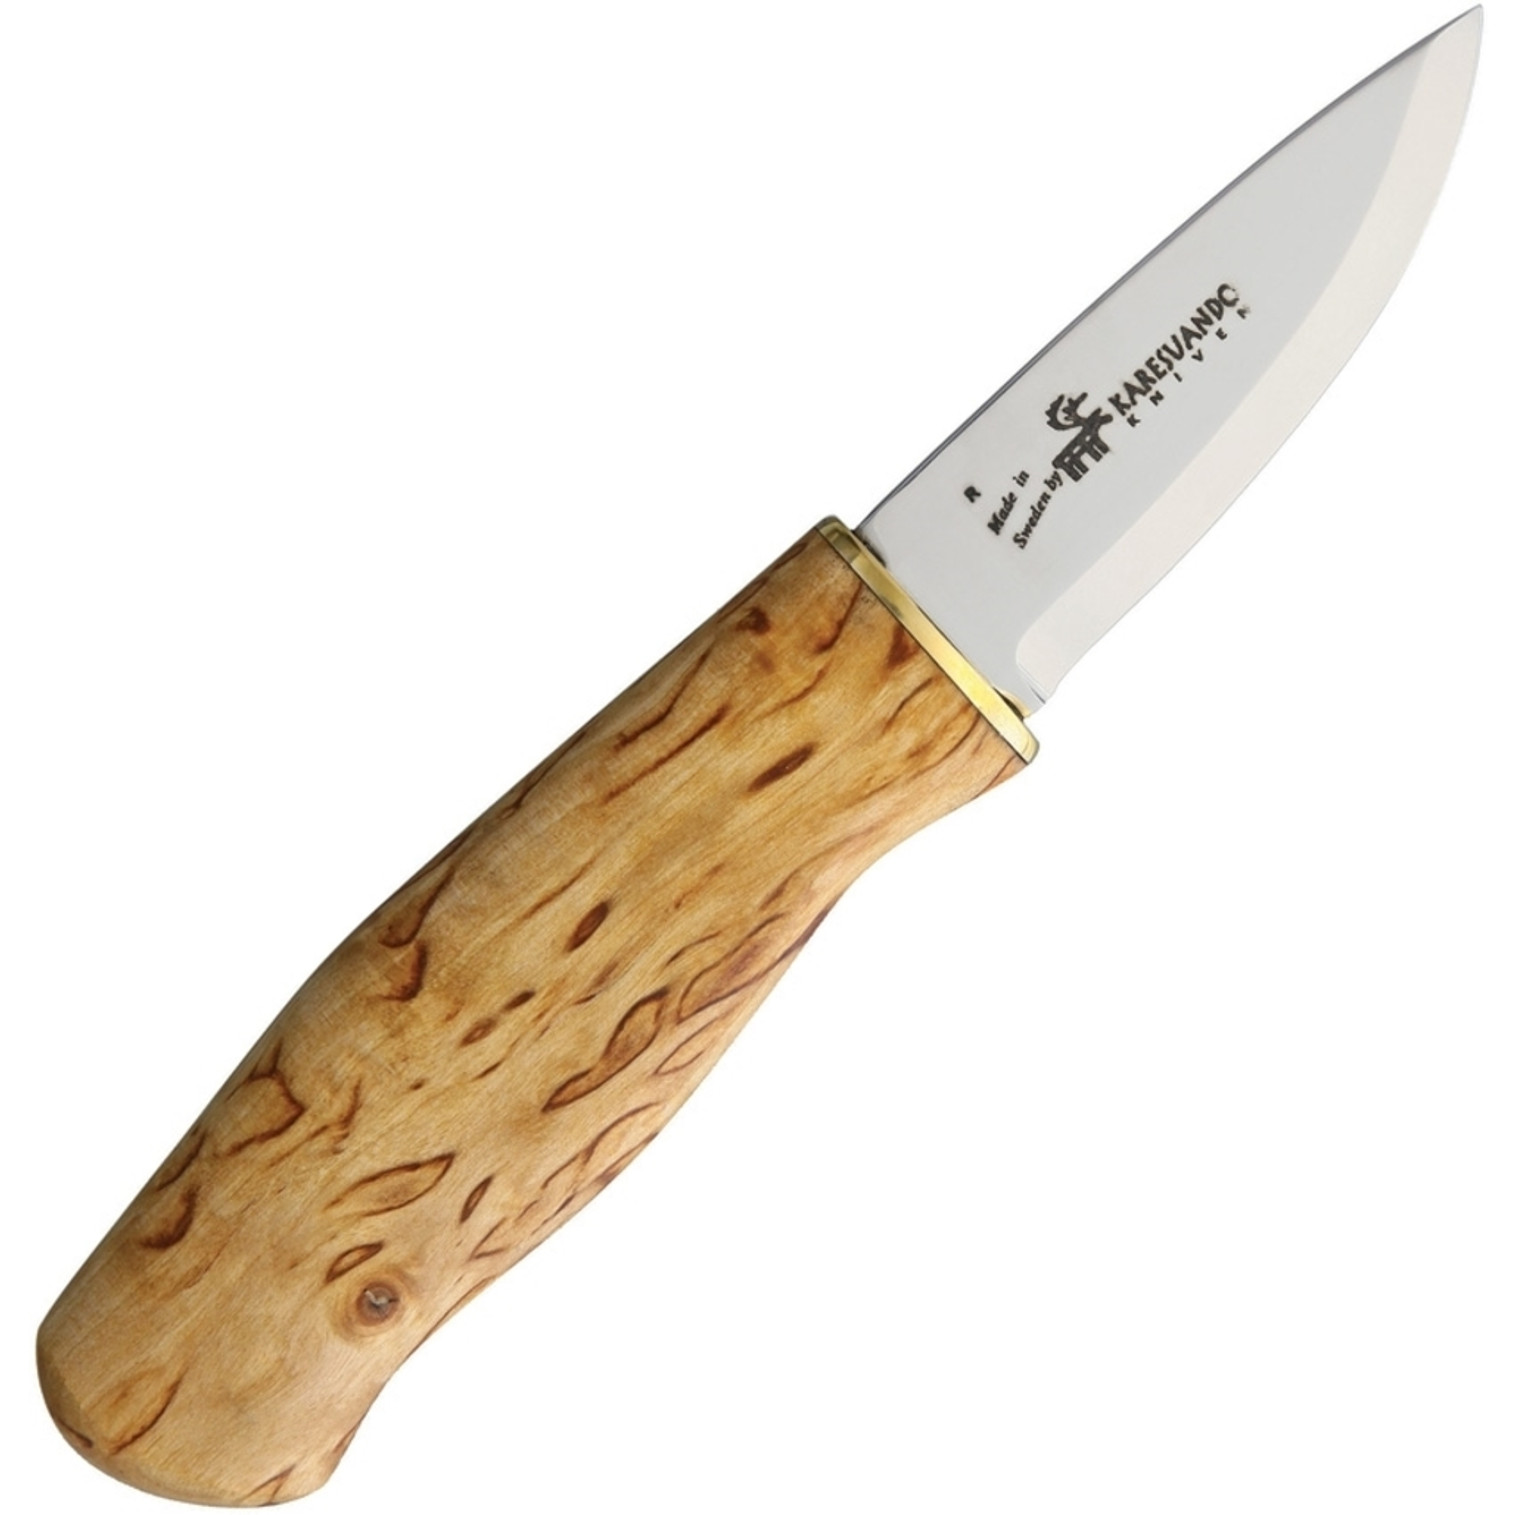 Kuttainen Bushcraft Knife